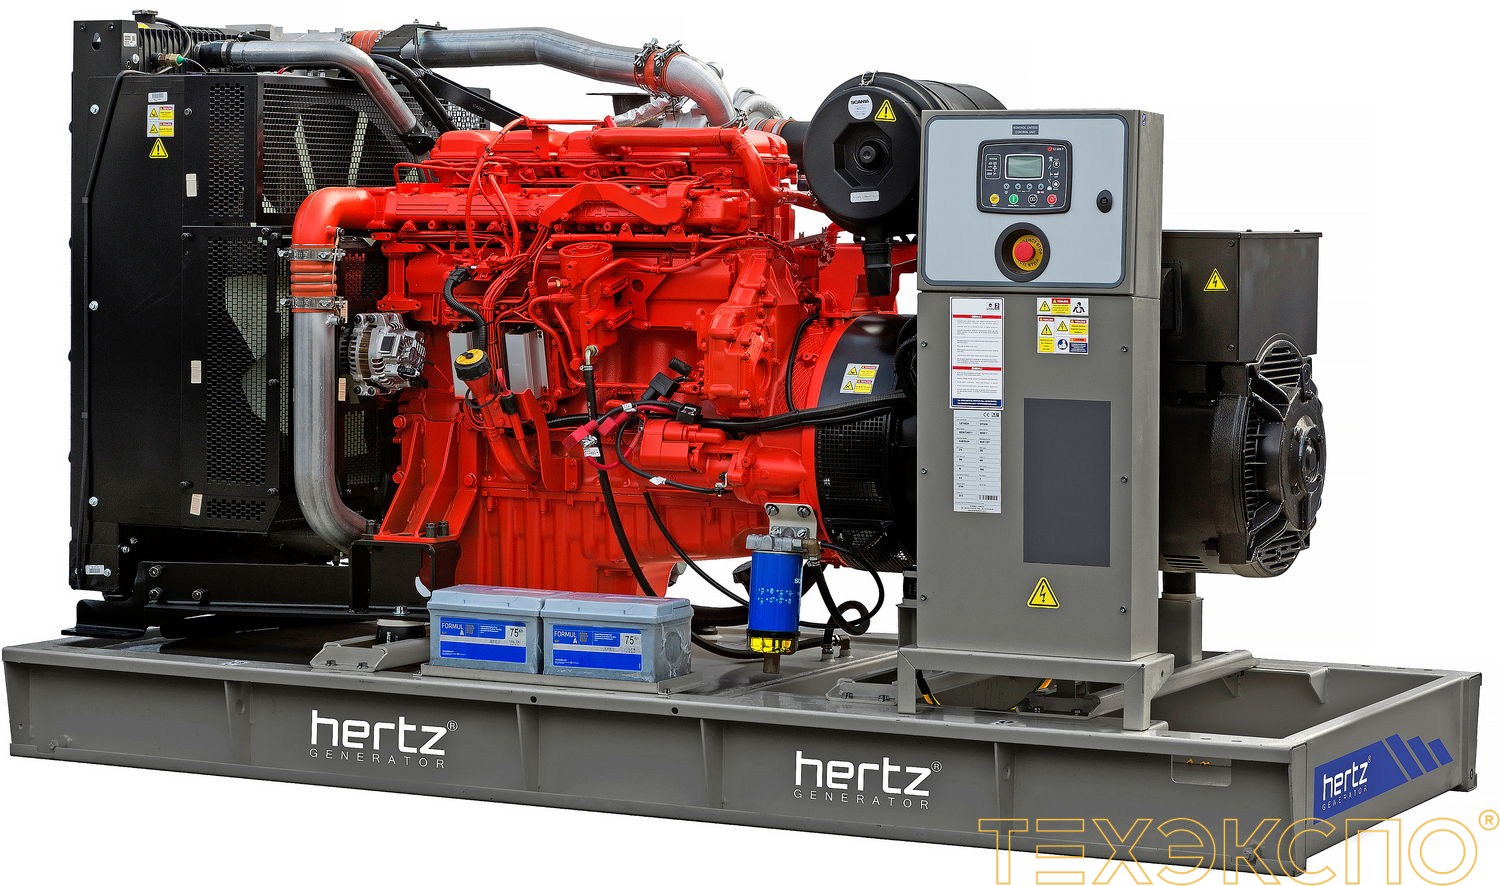 HERTZ HG440SC - ДЭС 327 кВт в Санкт-Петербурге | Дизельная электростанция в Техэкспо